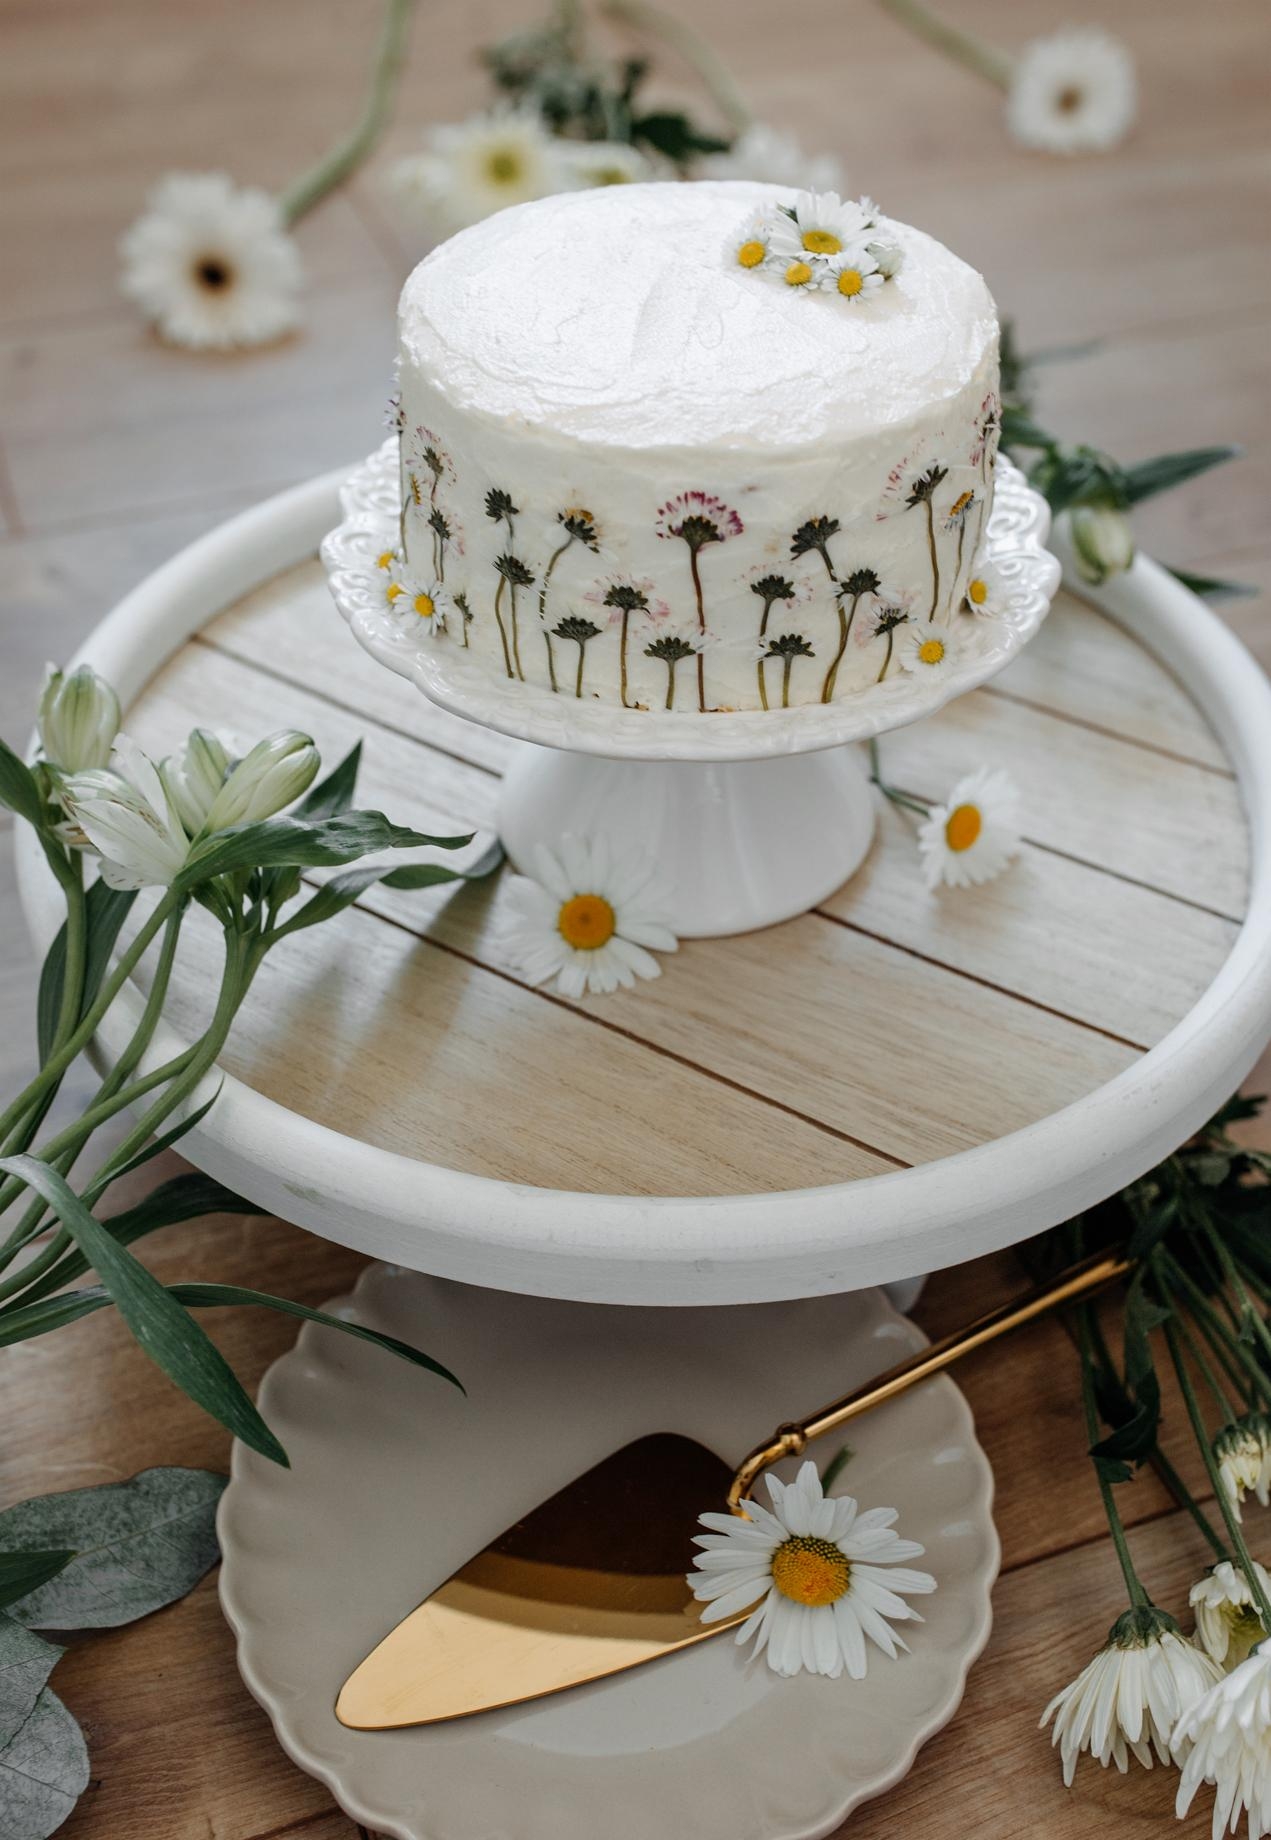 Gänseblümchen gefällig? #torte #cake #couchliebt #bohostyle #kuchen #natur #greenliving